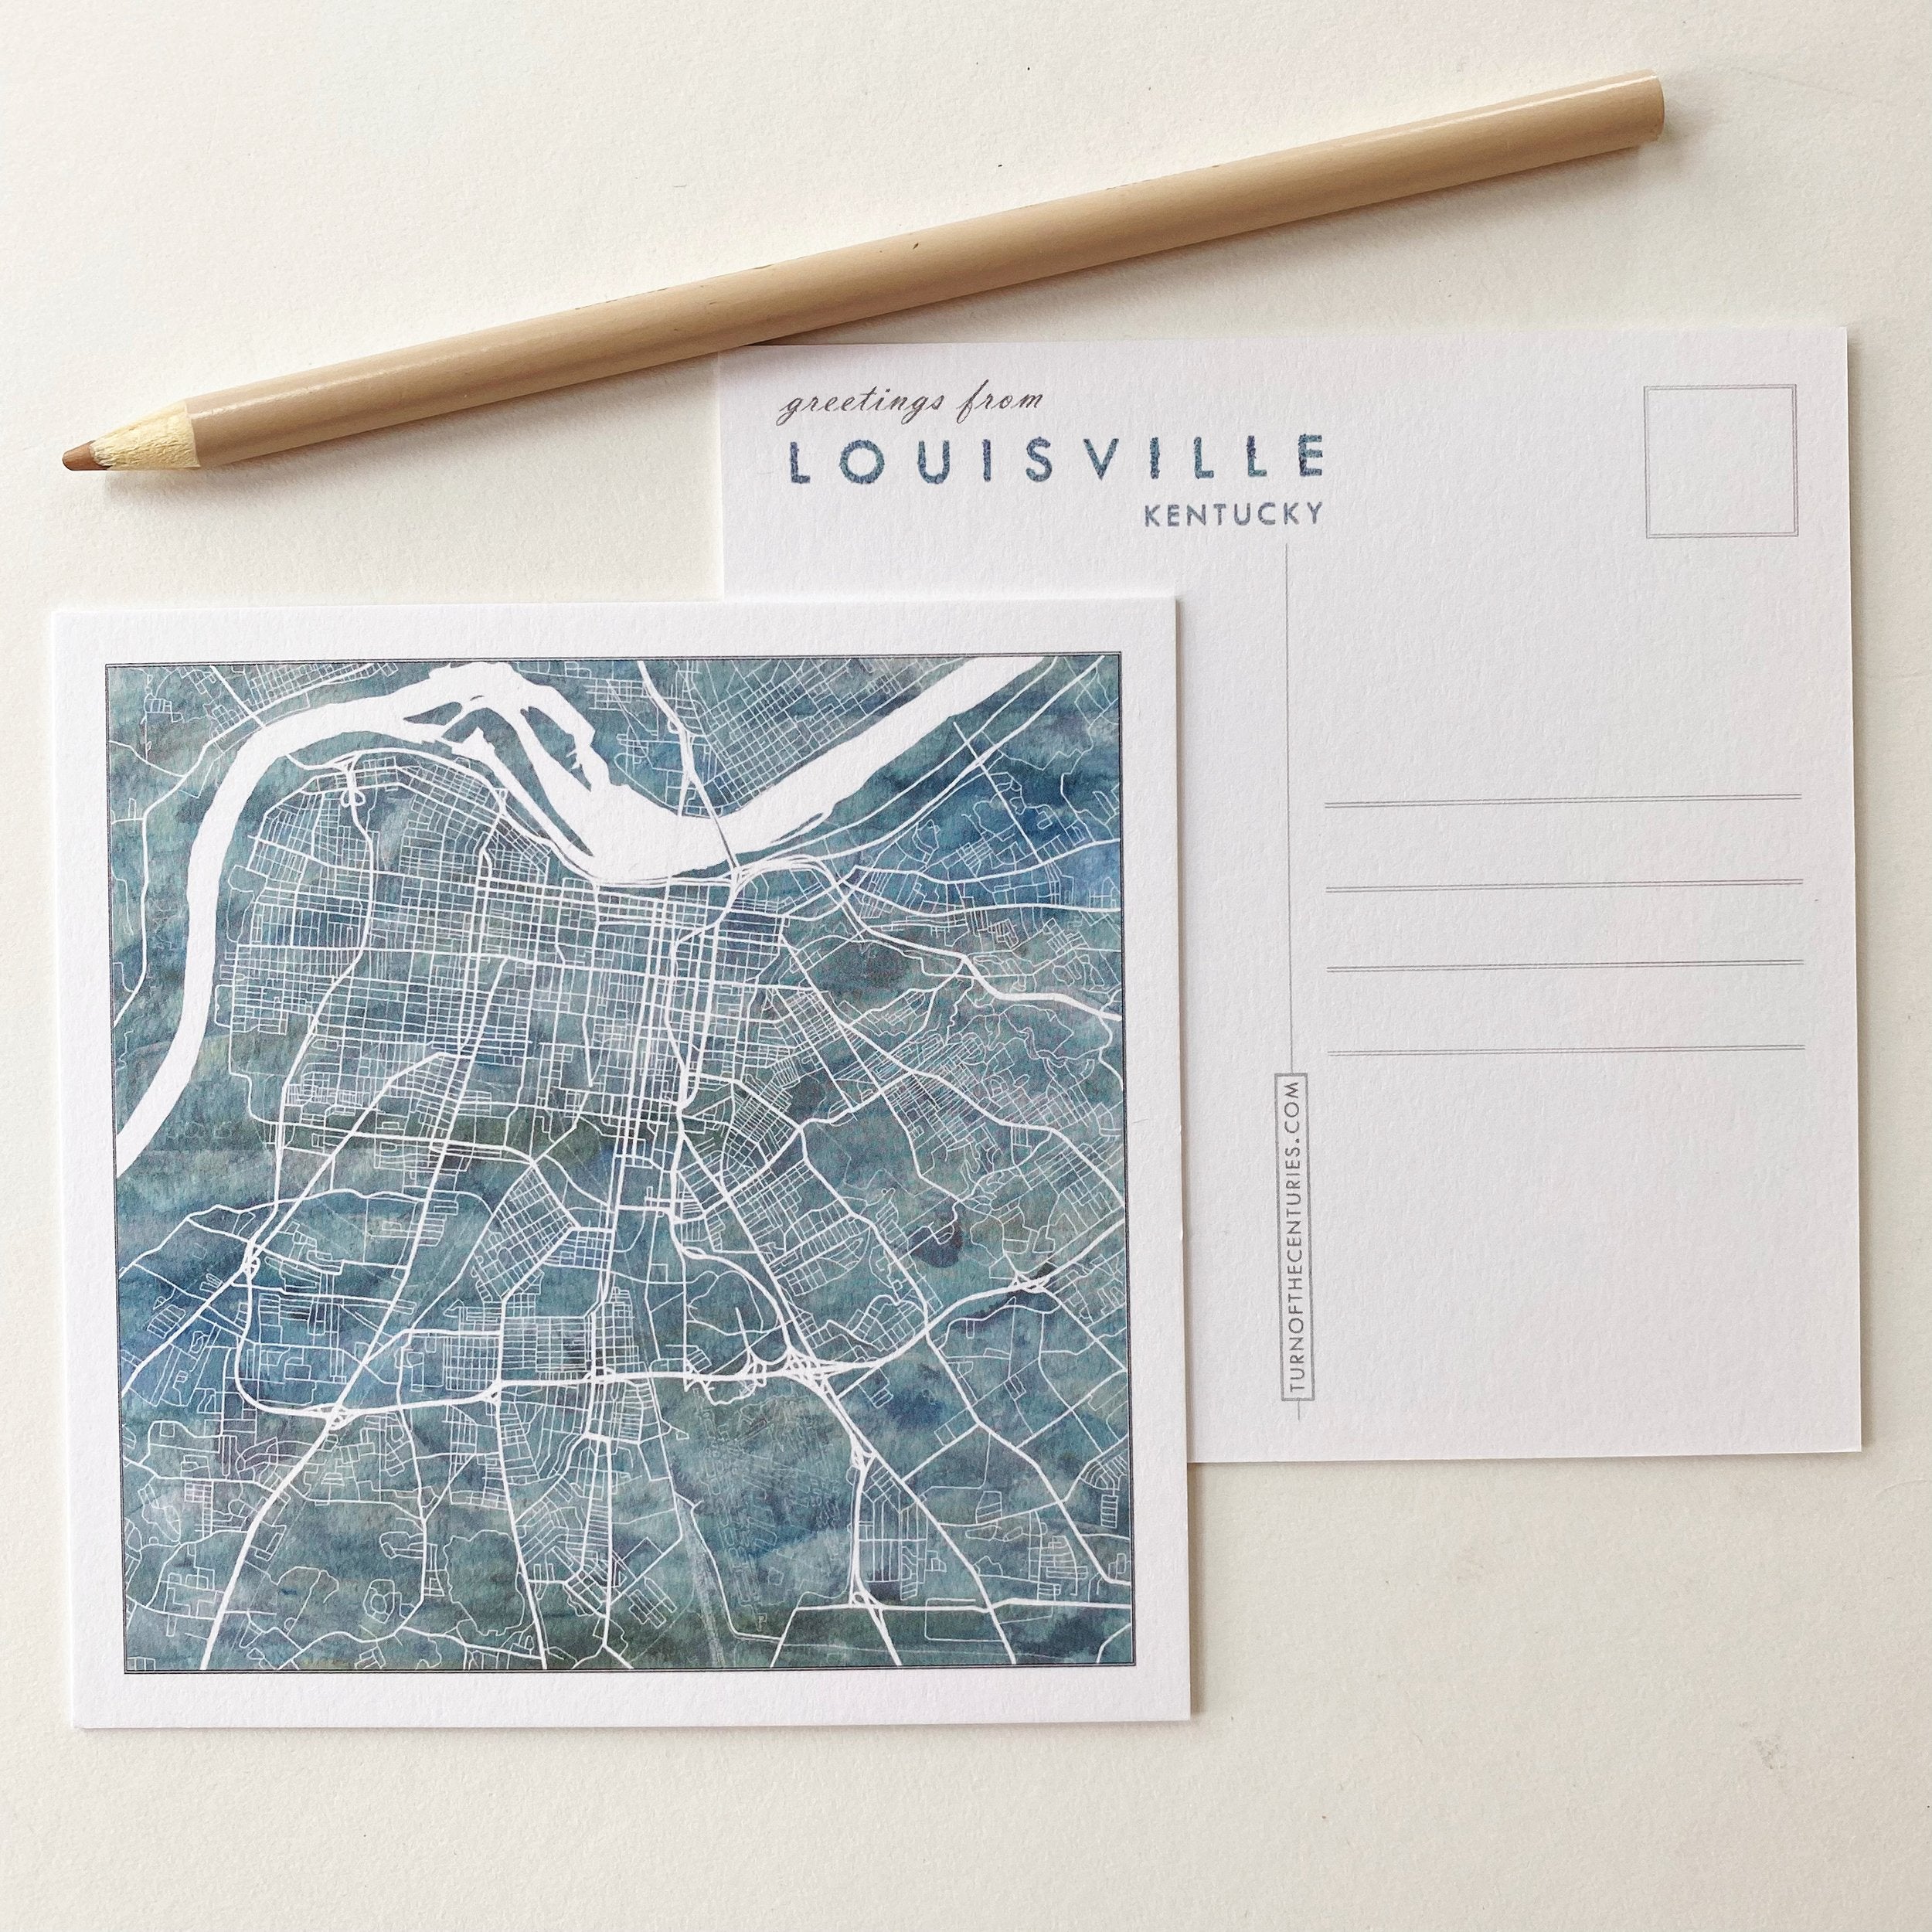 LOUISVILLE Kentucky Map Postcard